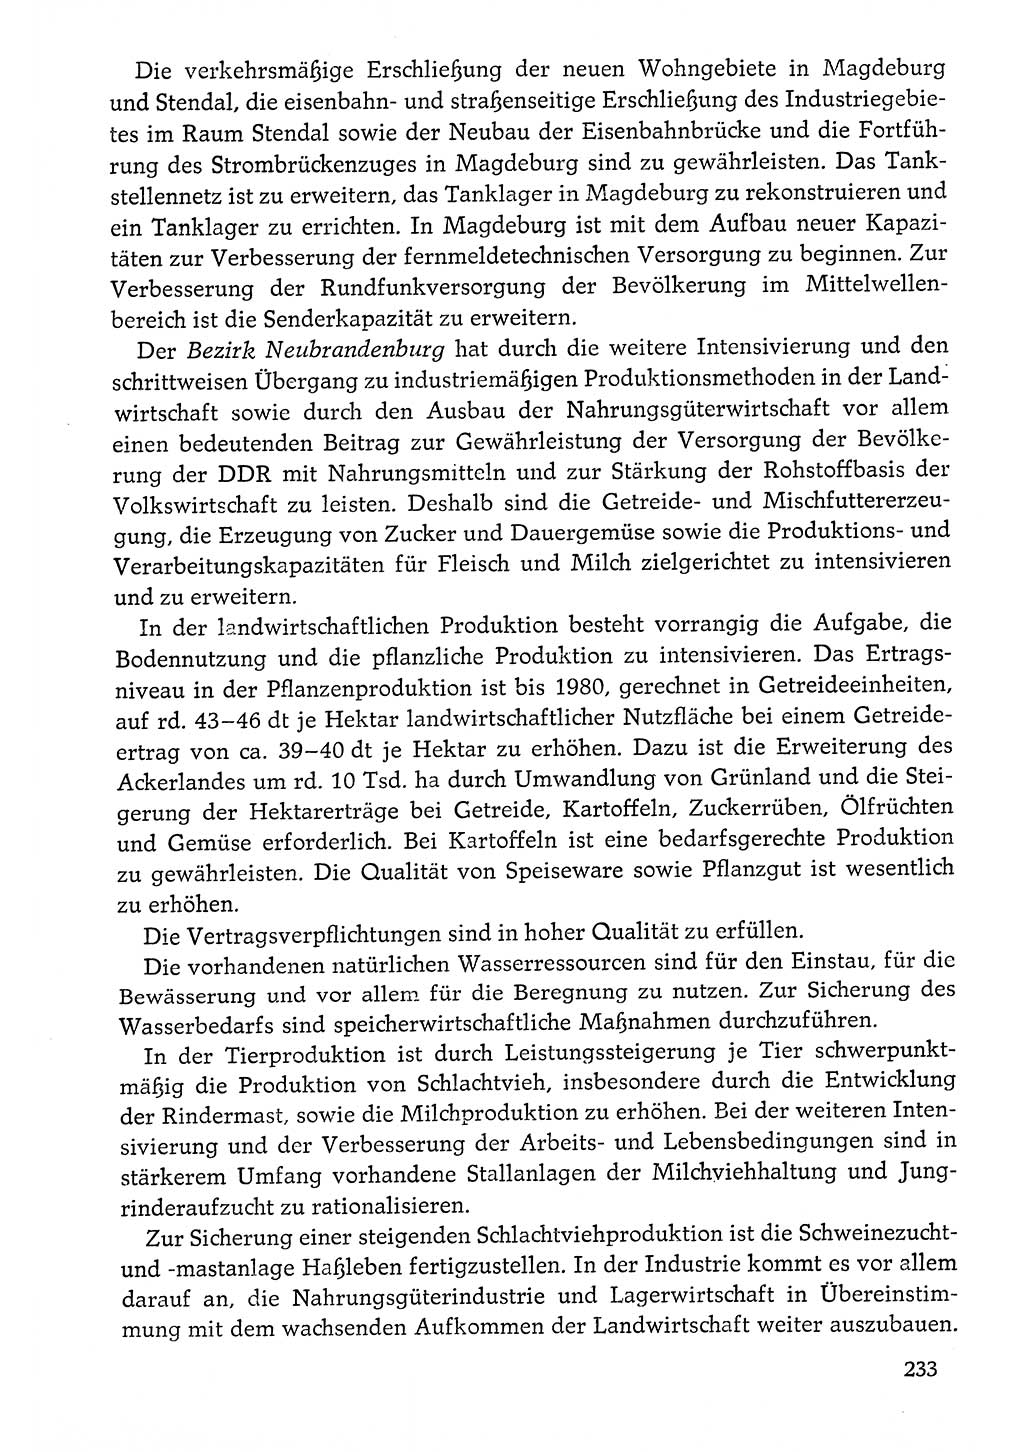 Dokumente der Sozialistischen Einheitspartei Deutschlands (SED) [Deutsche Demokratische Republik (DDR)] 1976-1977, Seite 233 (Dok. SED DDR 1976-1977, S. 233)